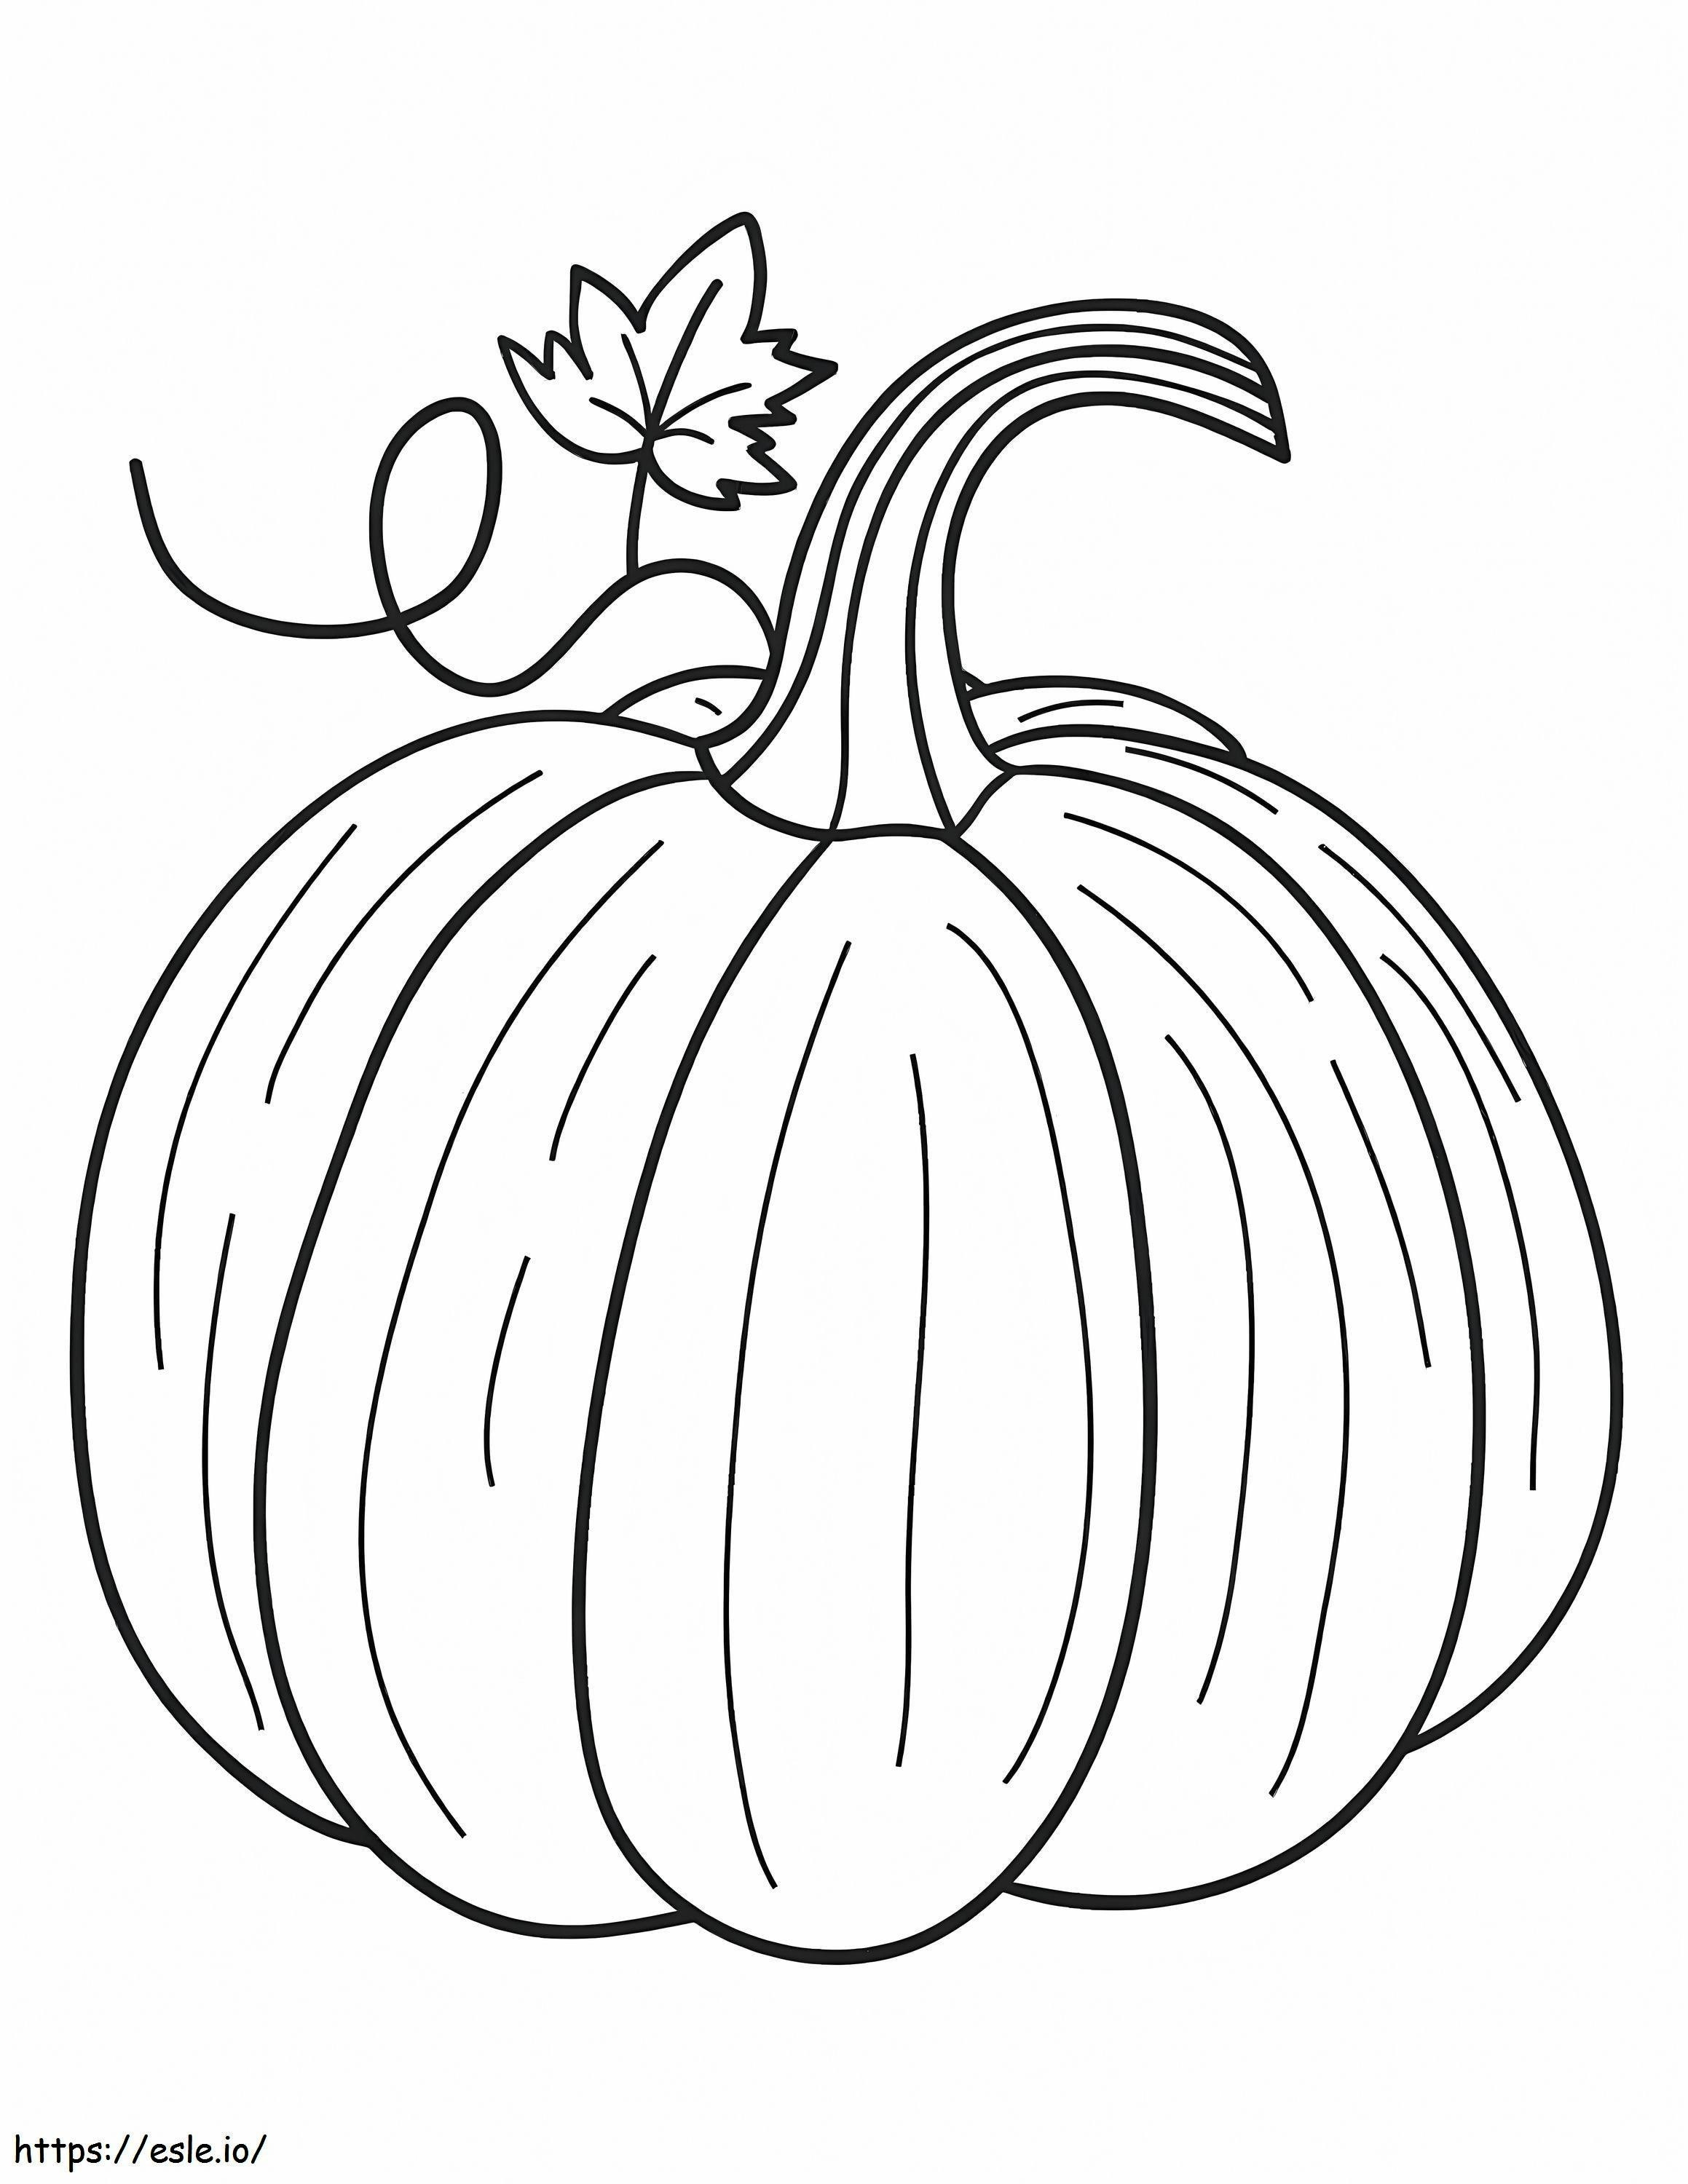 Big Pumpkin coloring page